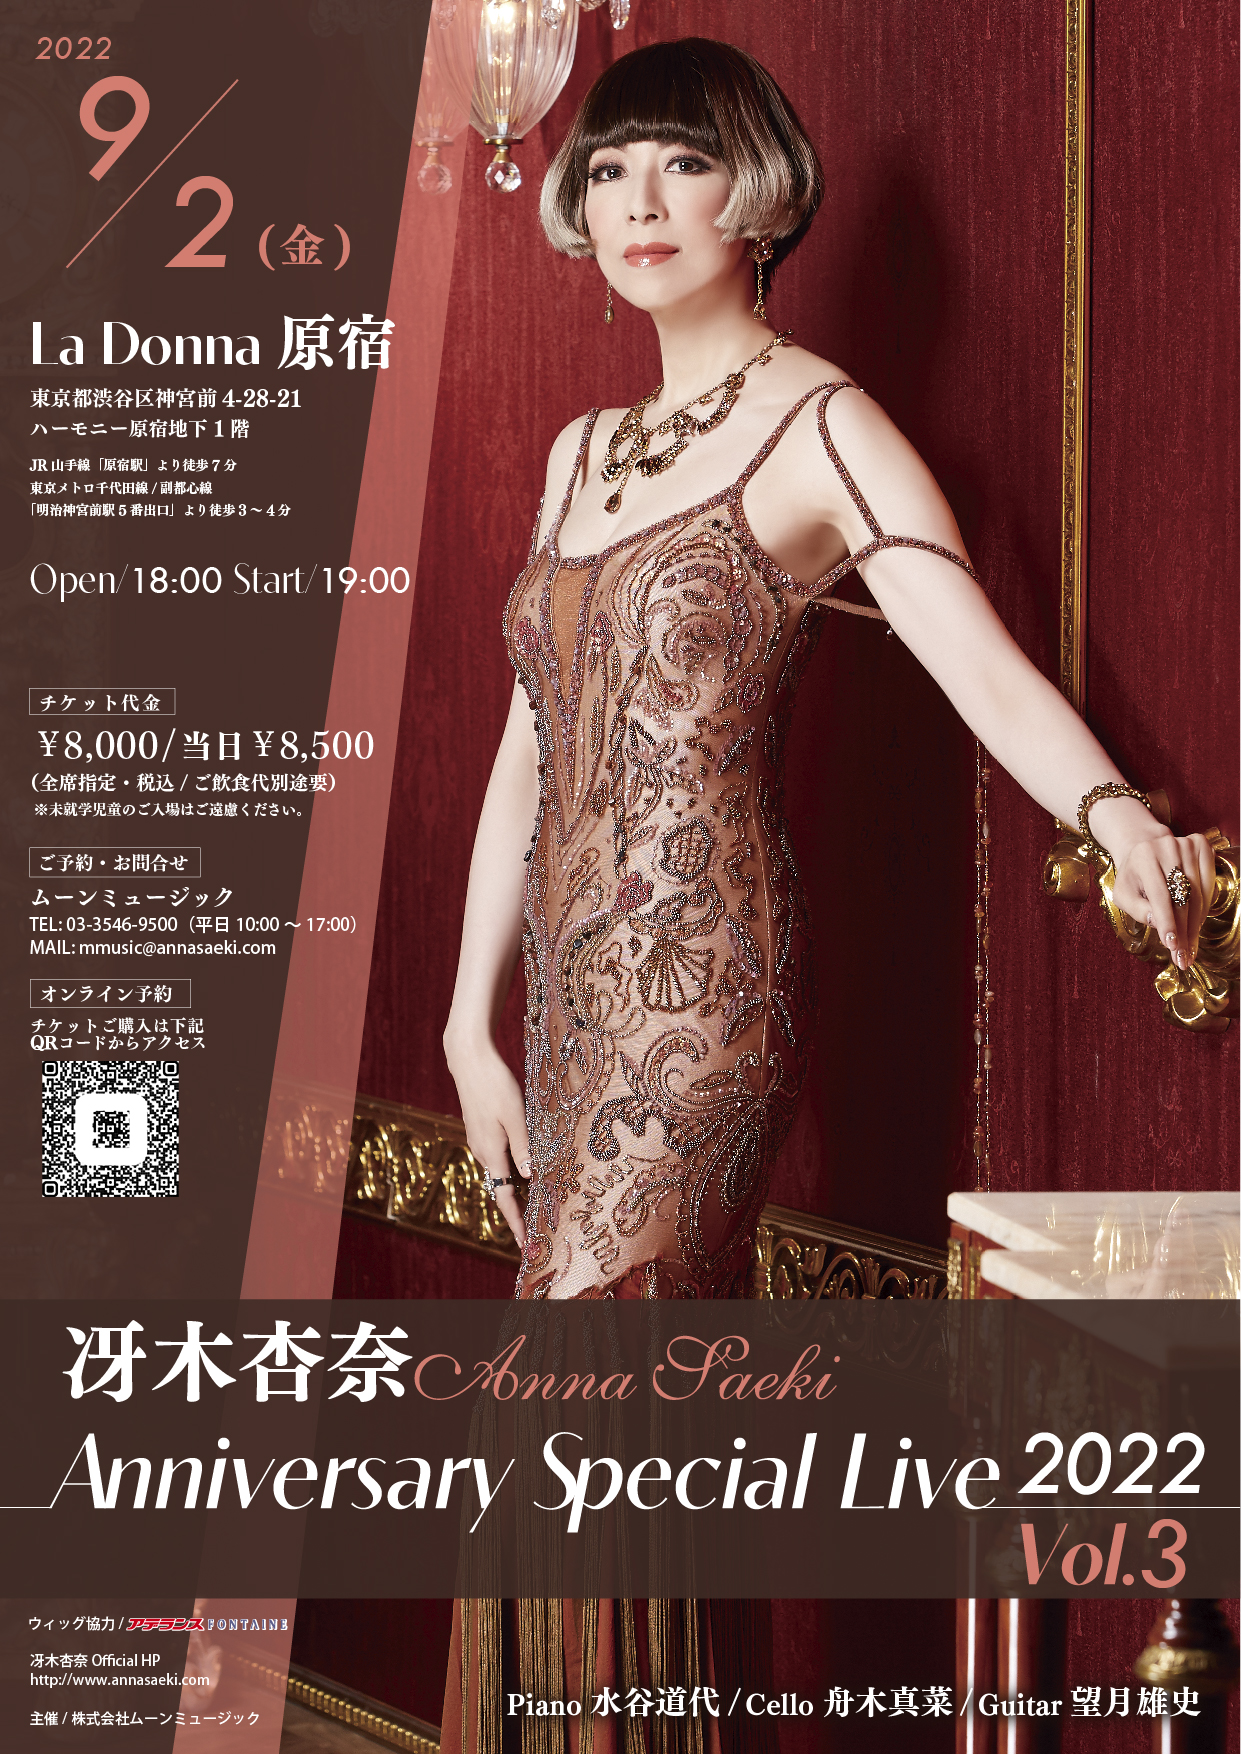 冴木杏奈Anniversary Special Live 2022 Vol.3